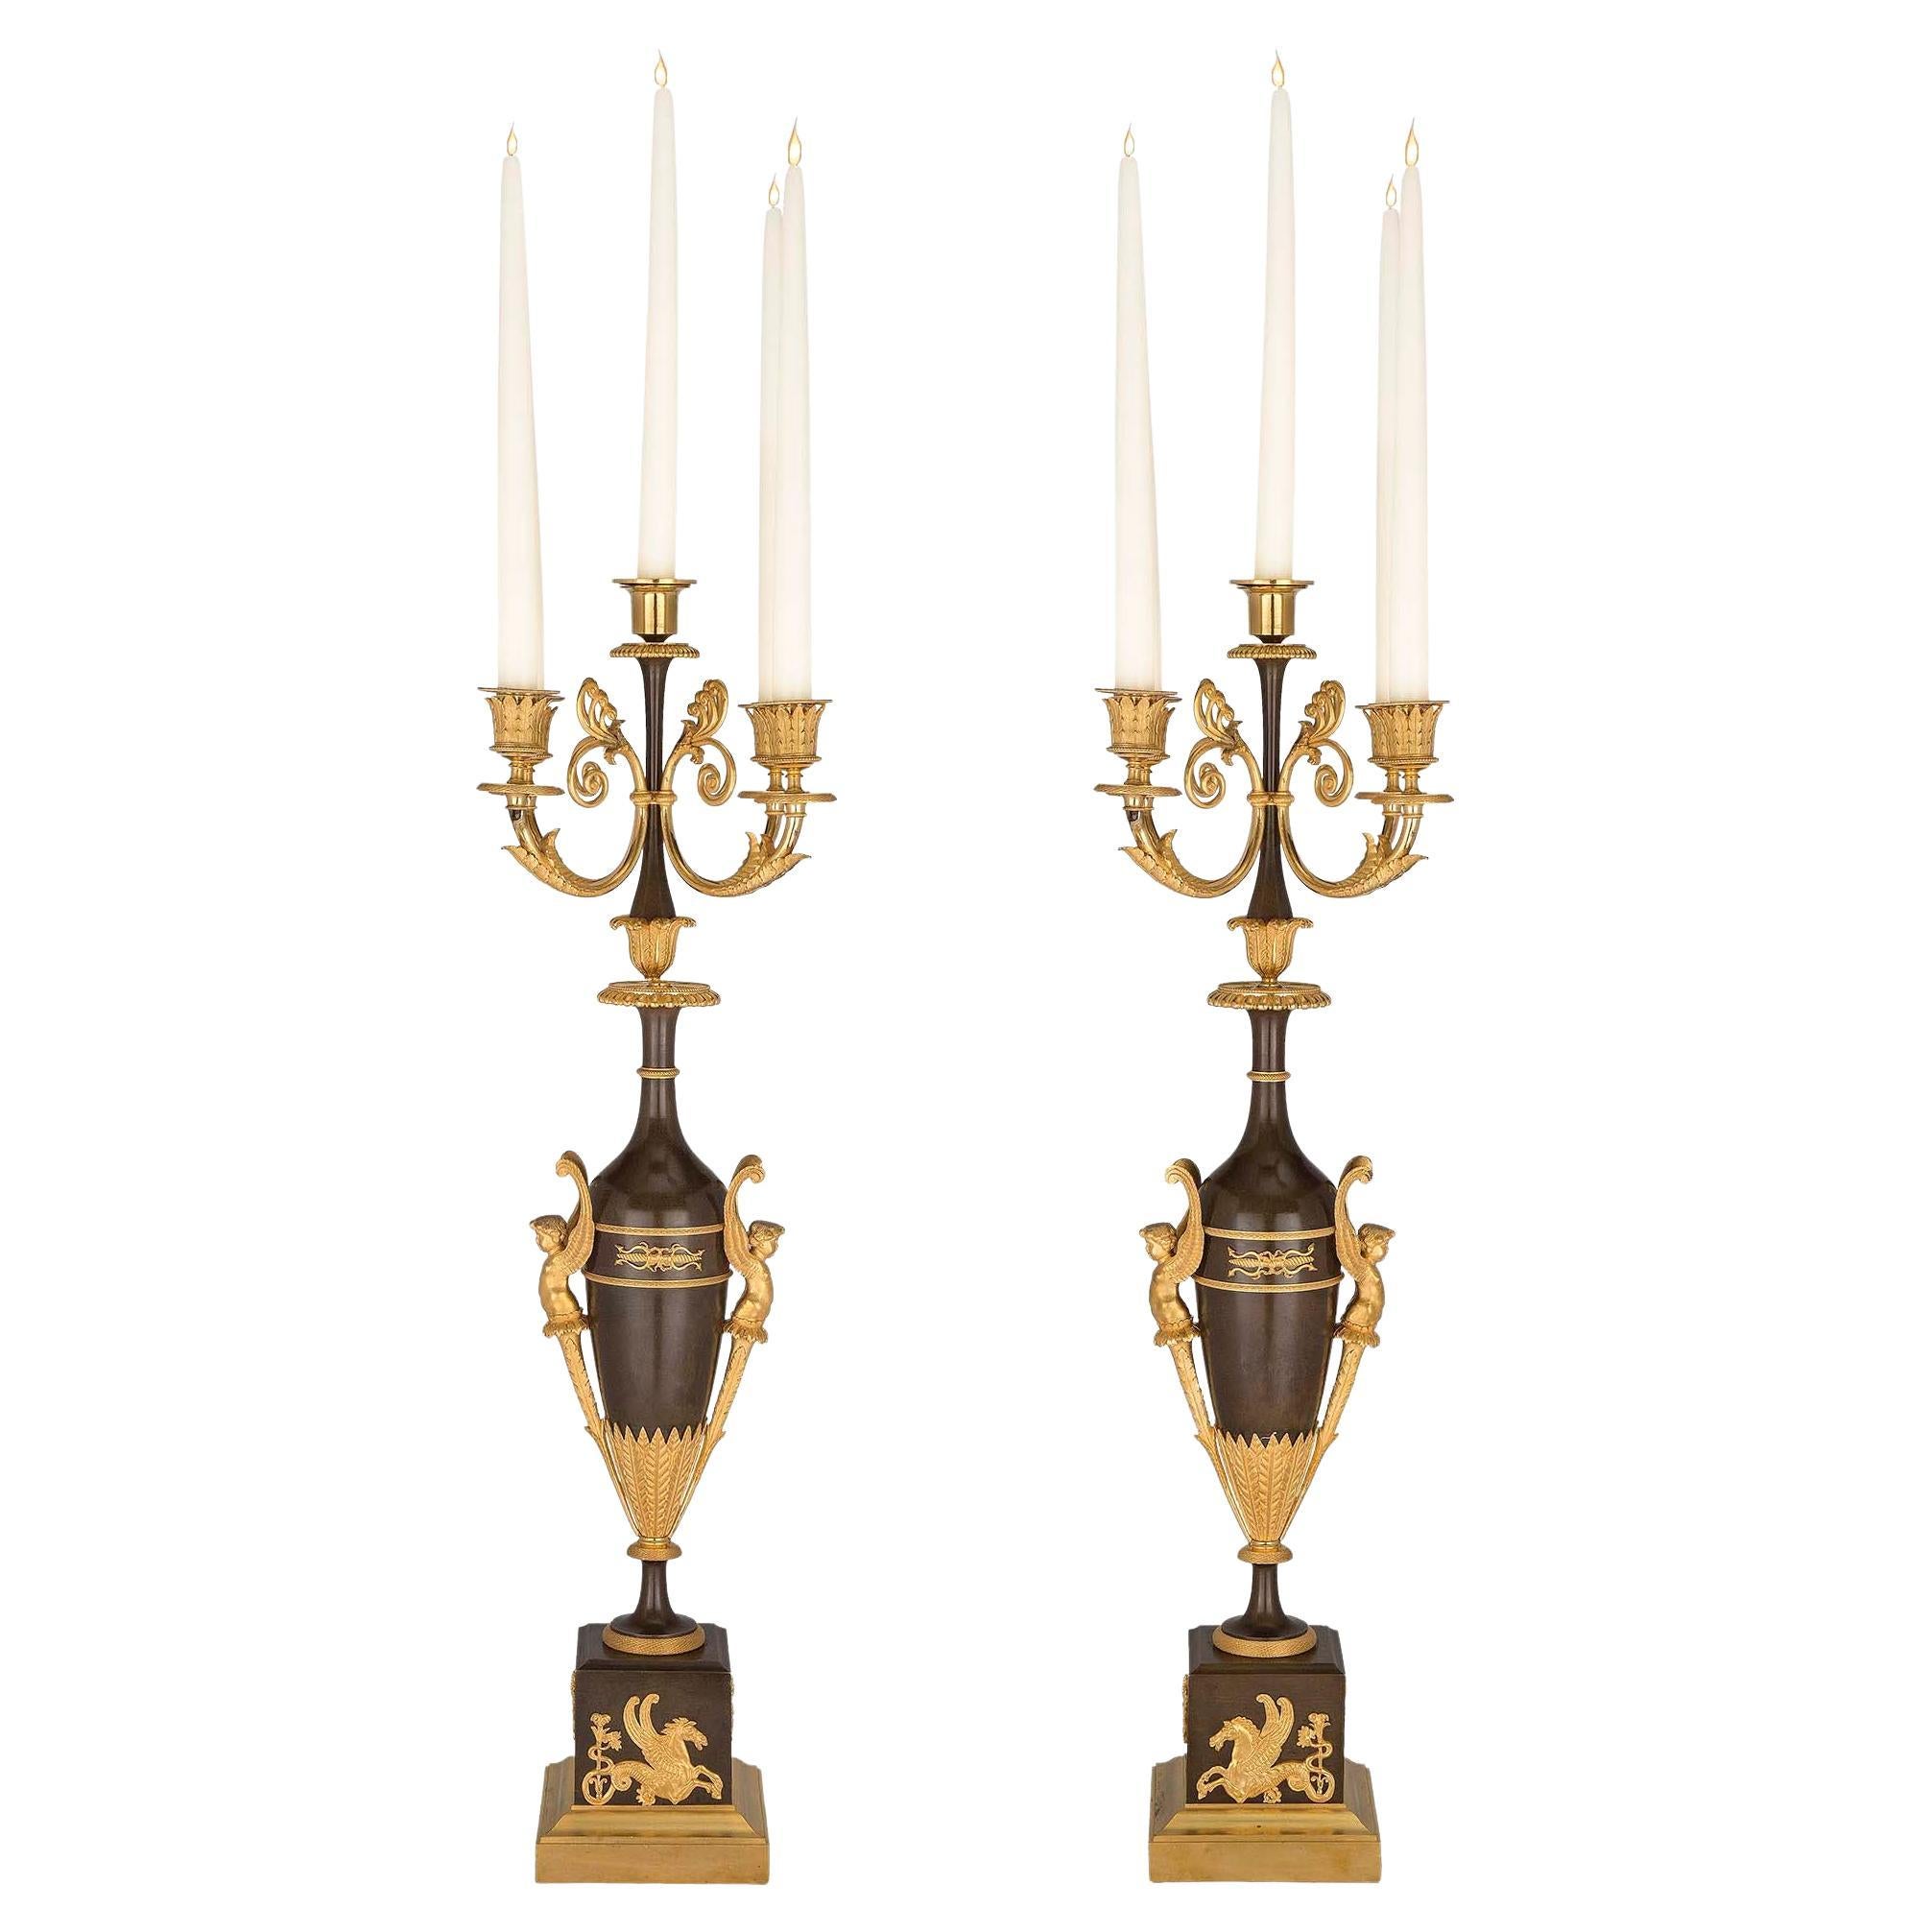 Paire de candélabres français d'époque Premier Empire du XIXe siècle en bronze et bronze doré